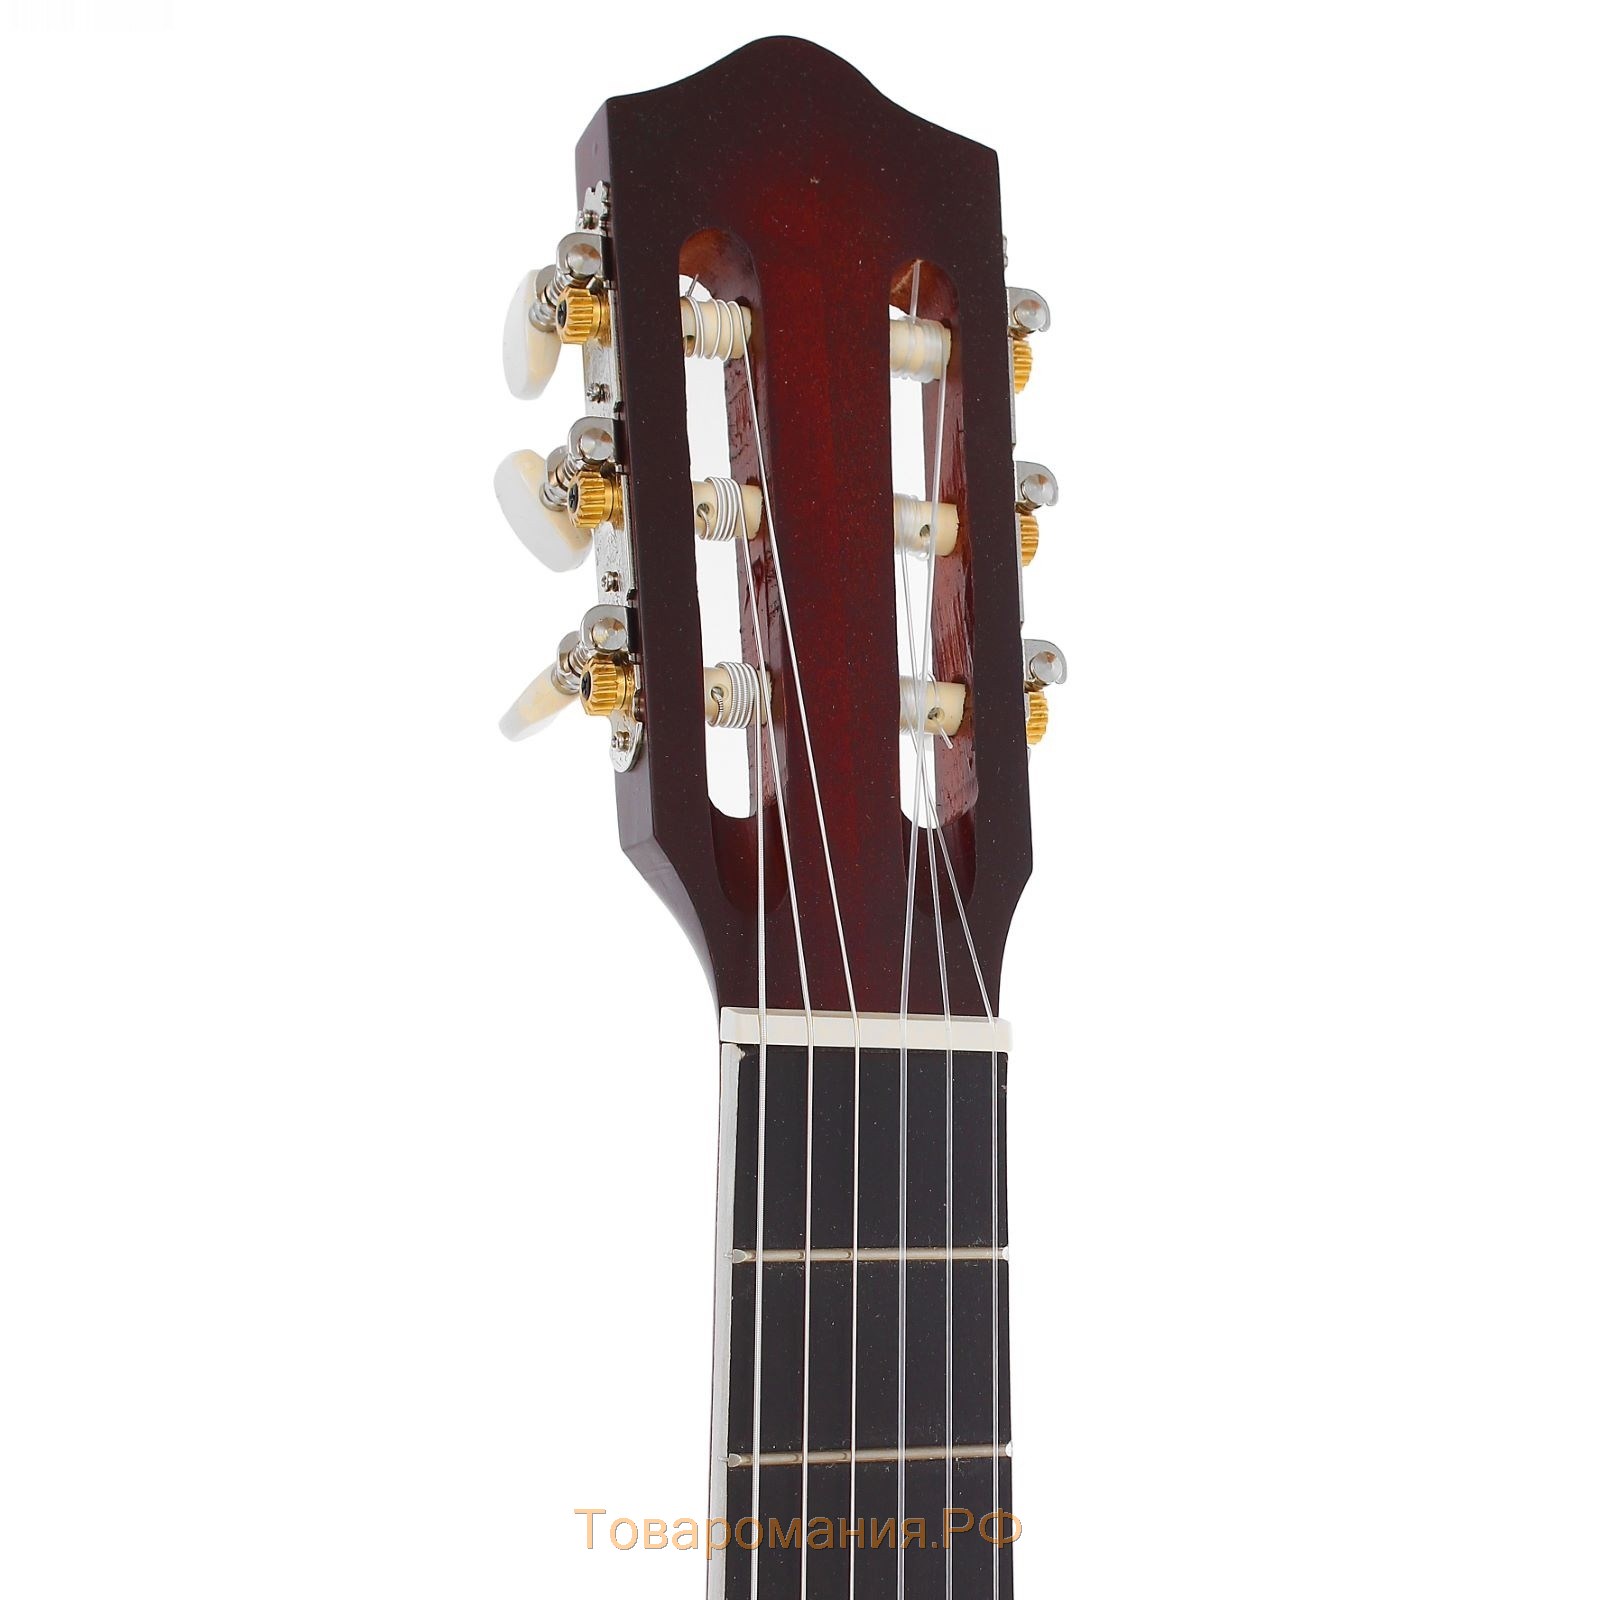 Классическая гитара "Амистар н-30" 6 струнная, менз.650мм , матовая